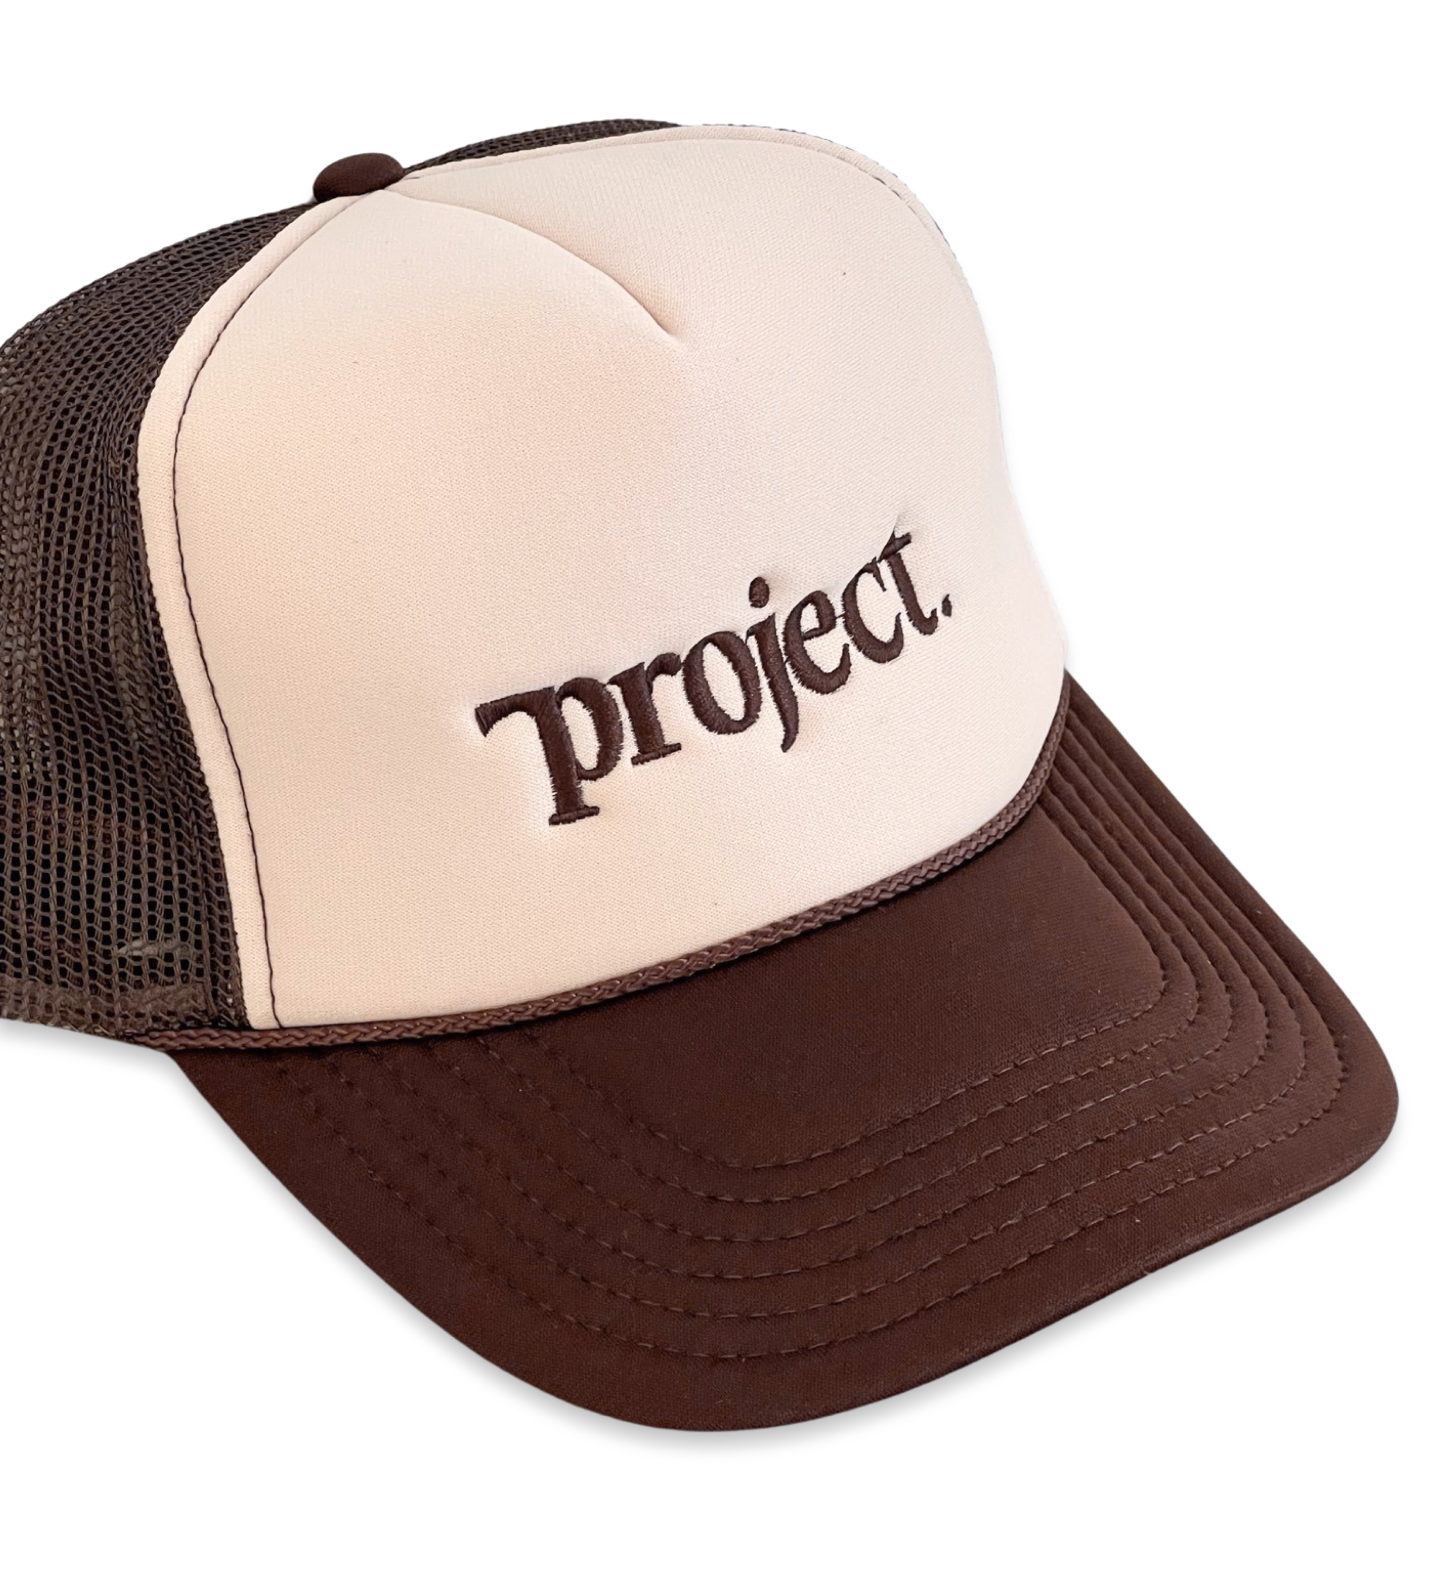 PROJECT. Trucker Cap (Cream/Brown)